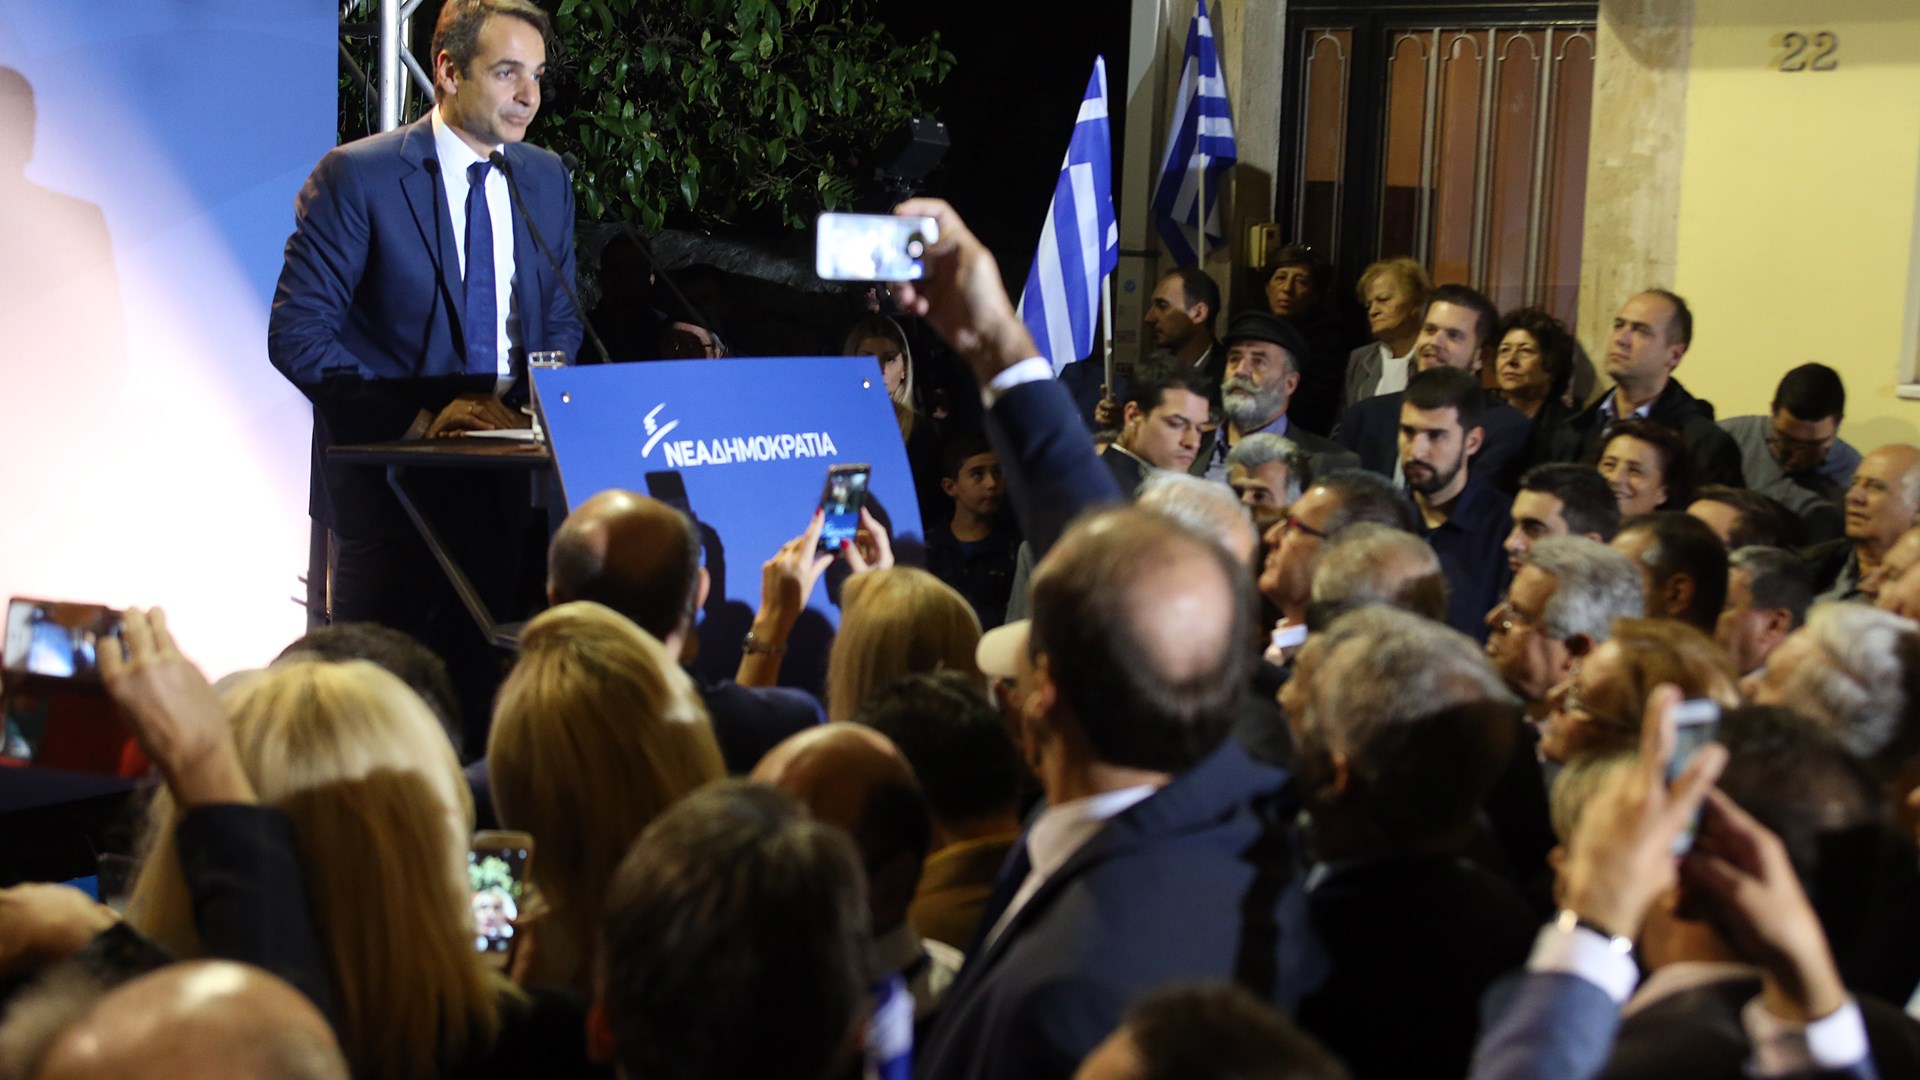 Μητσοτάκης:  Η σημερινή κατάσταση στην Ελλάδα είναι αποτέλεσμα της μεγαλύτερης πολιτικής απάτης που έγινε ποτέ – ΒΙΝΤΕΟ